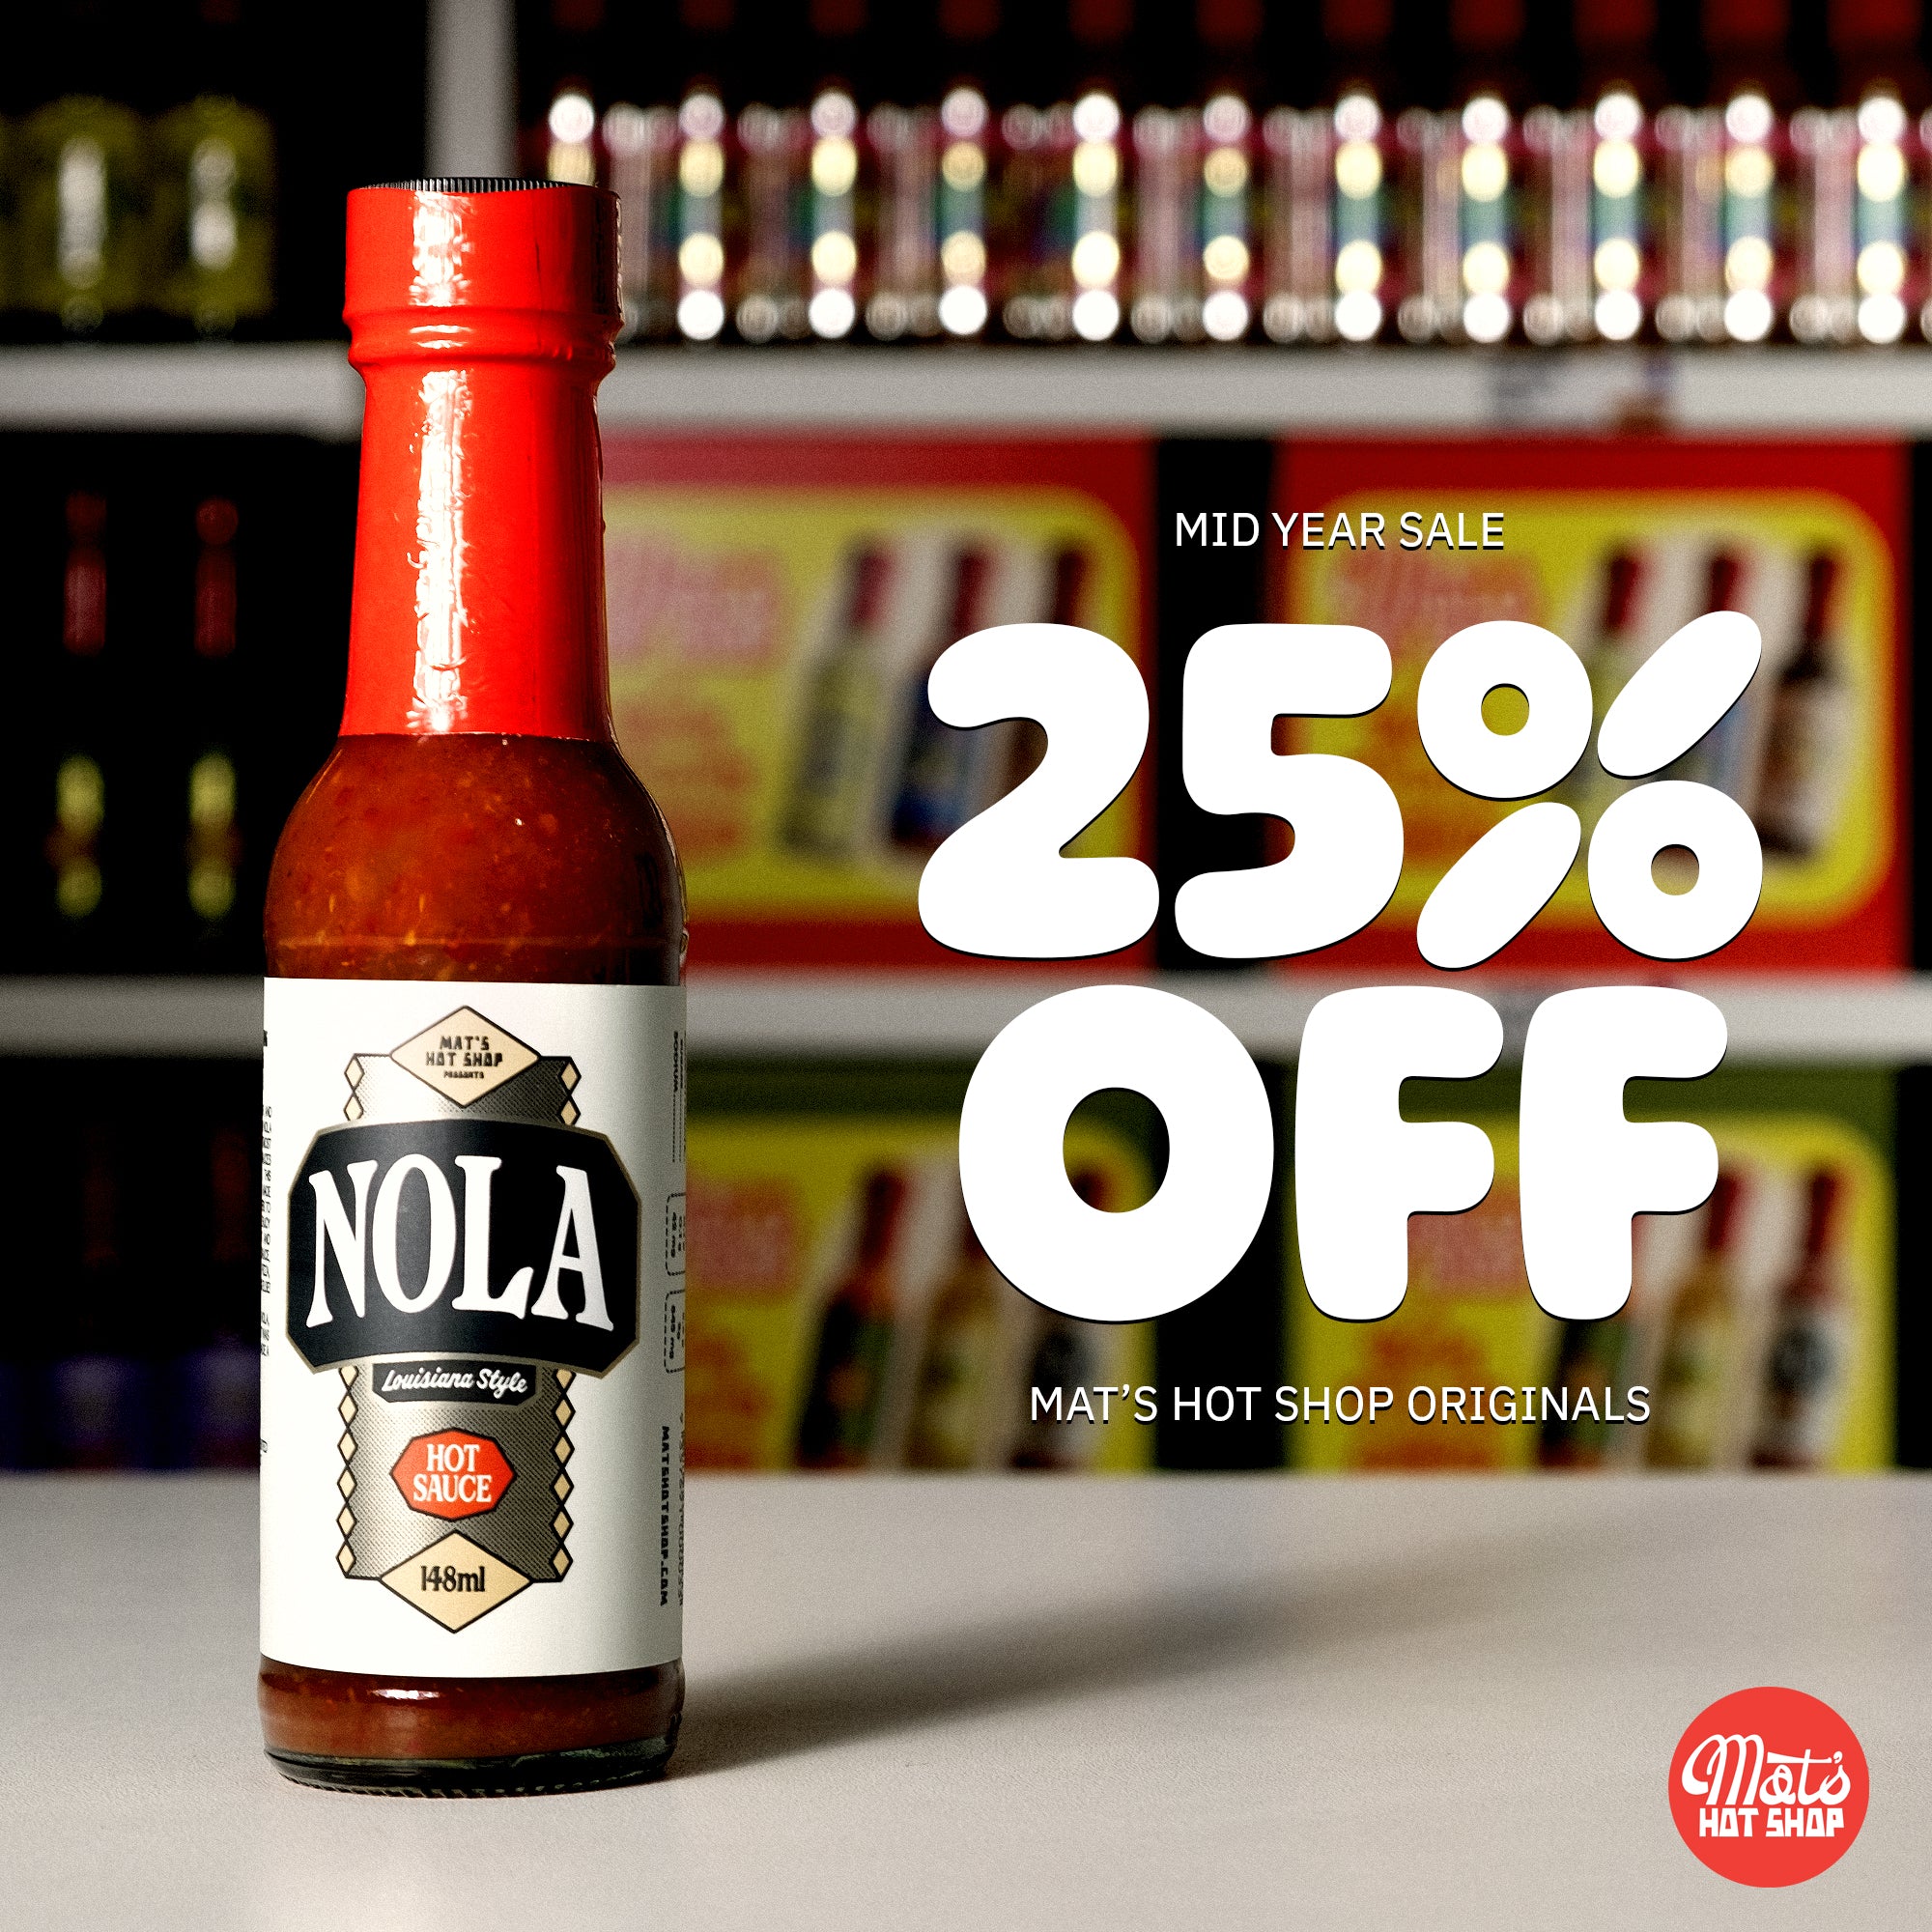 NOLA Louisiana Style Hot Sauce